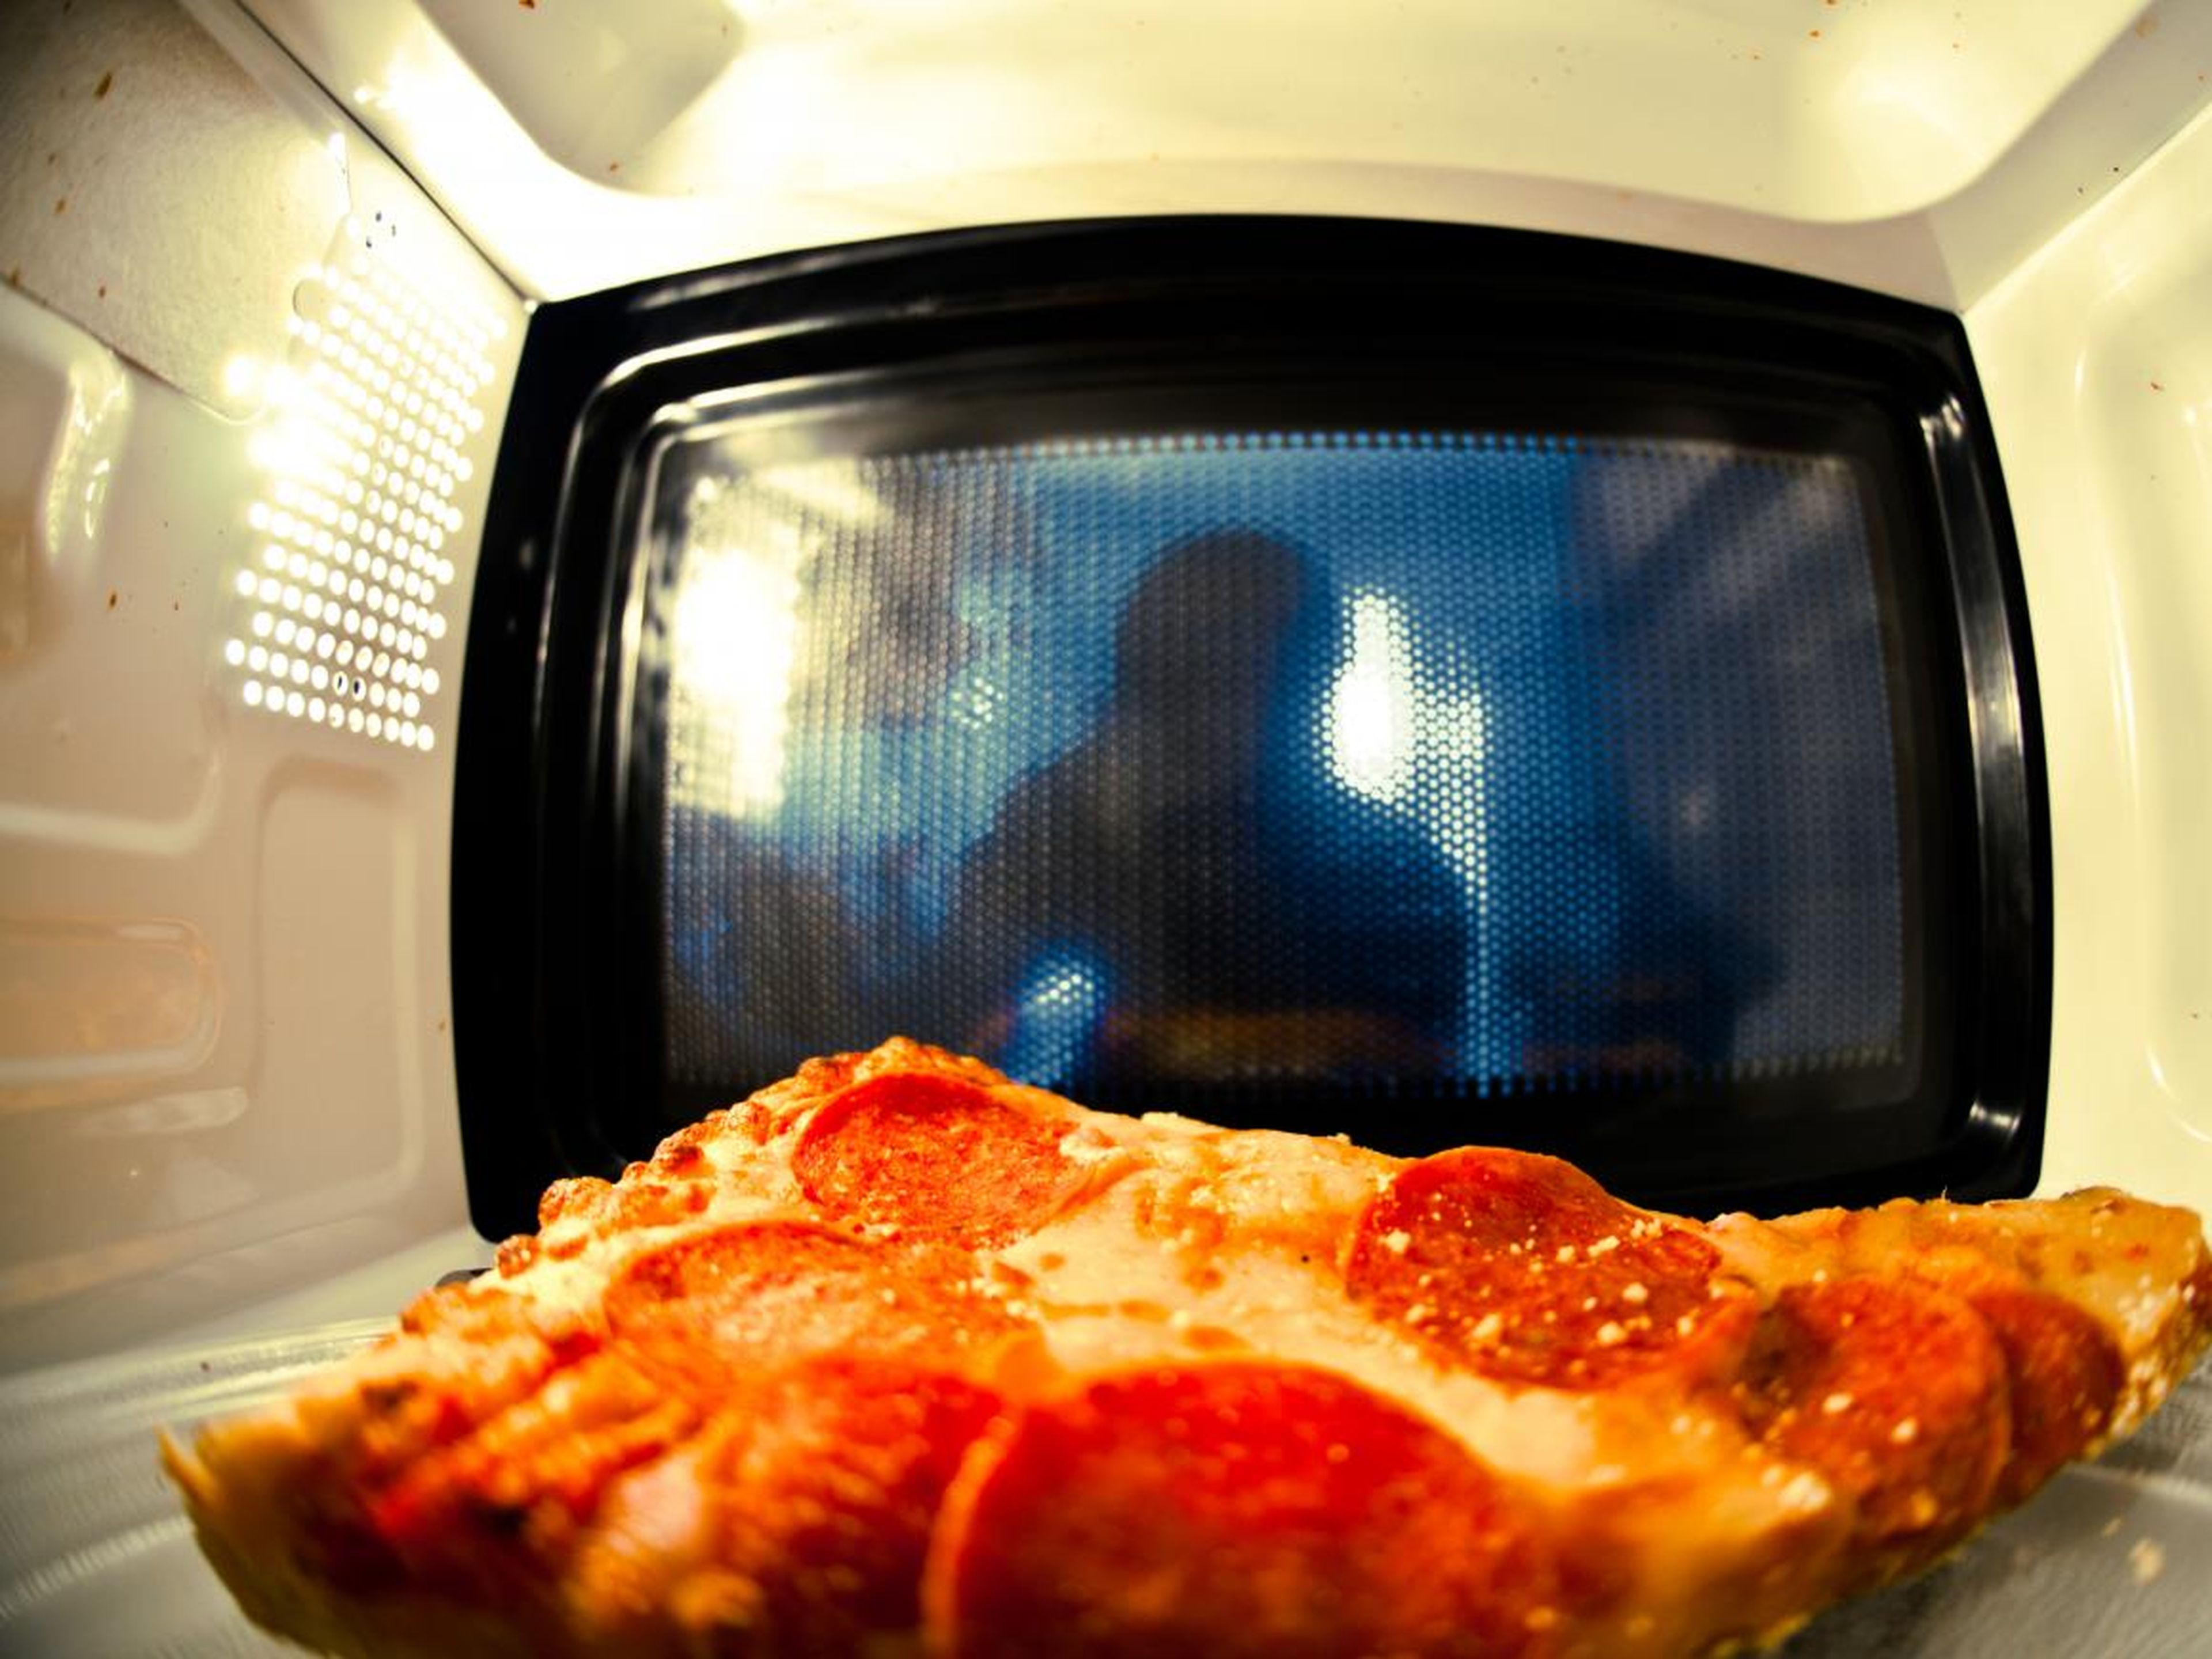 Овощи быстро в микроволновке. Пицца в микроволновке. Микроволновая печь с едой. Микроволновка с едой внутри.